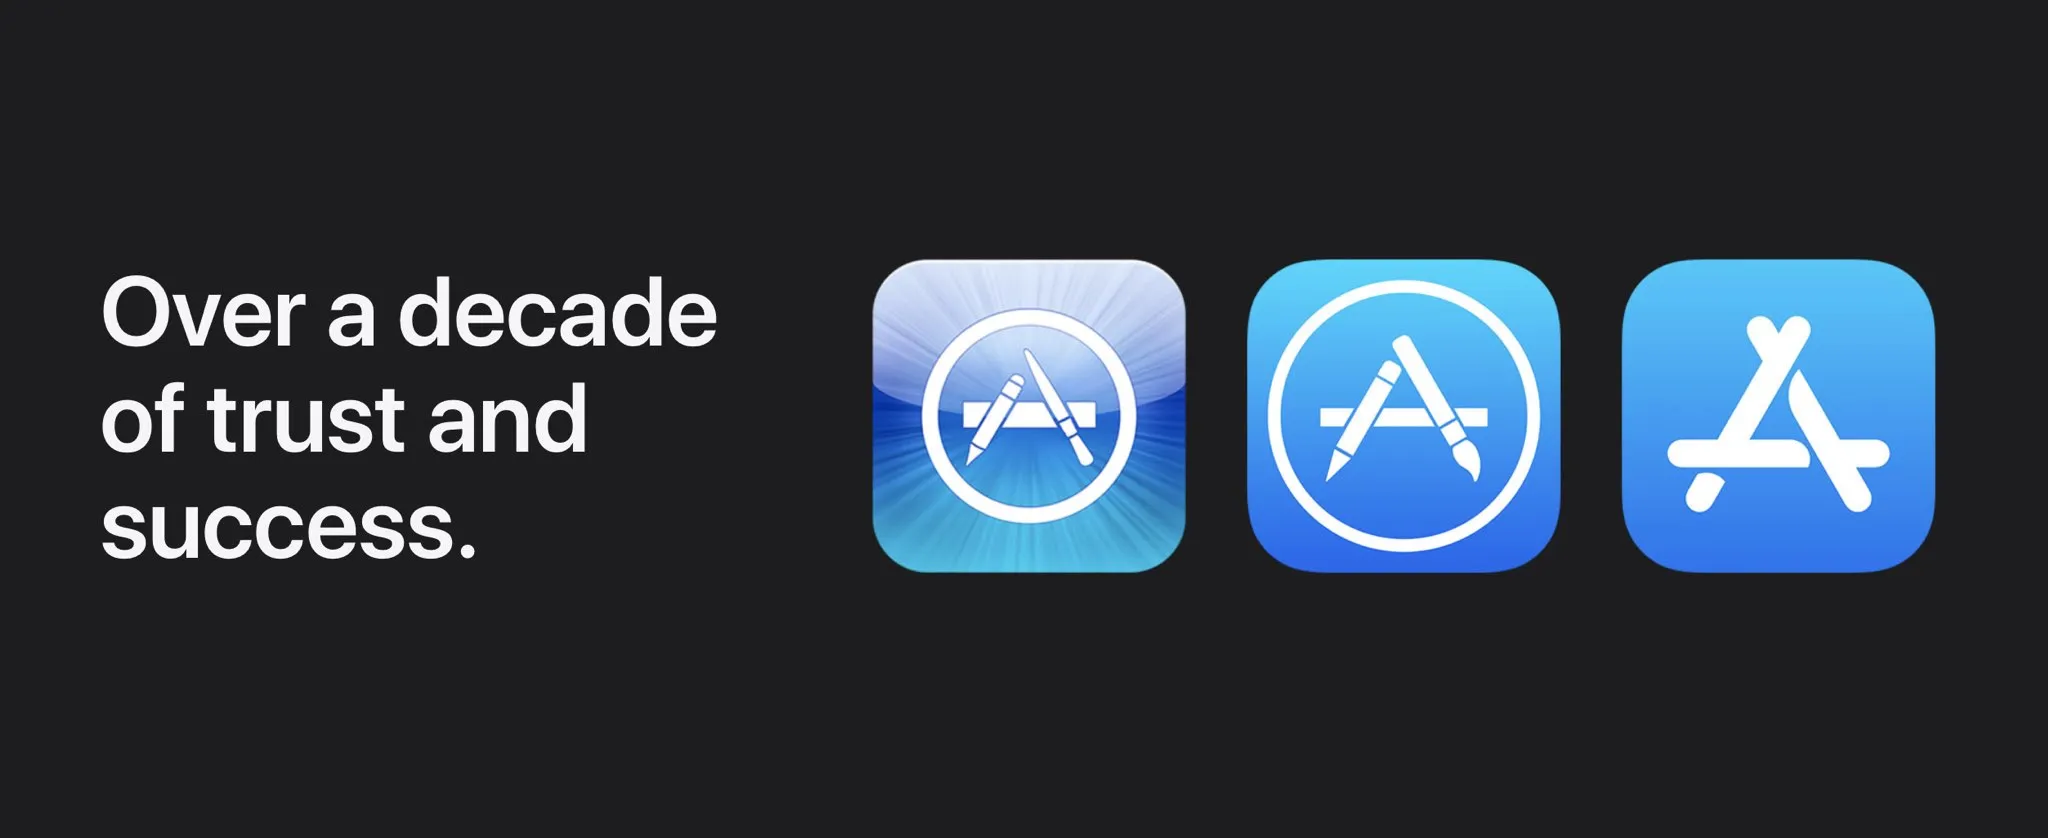 Marknadsföringsbild som visar App Store-ikonerna